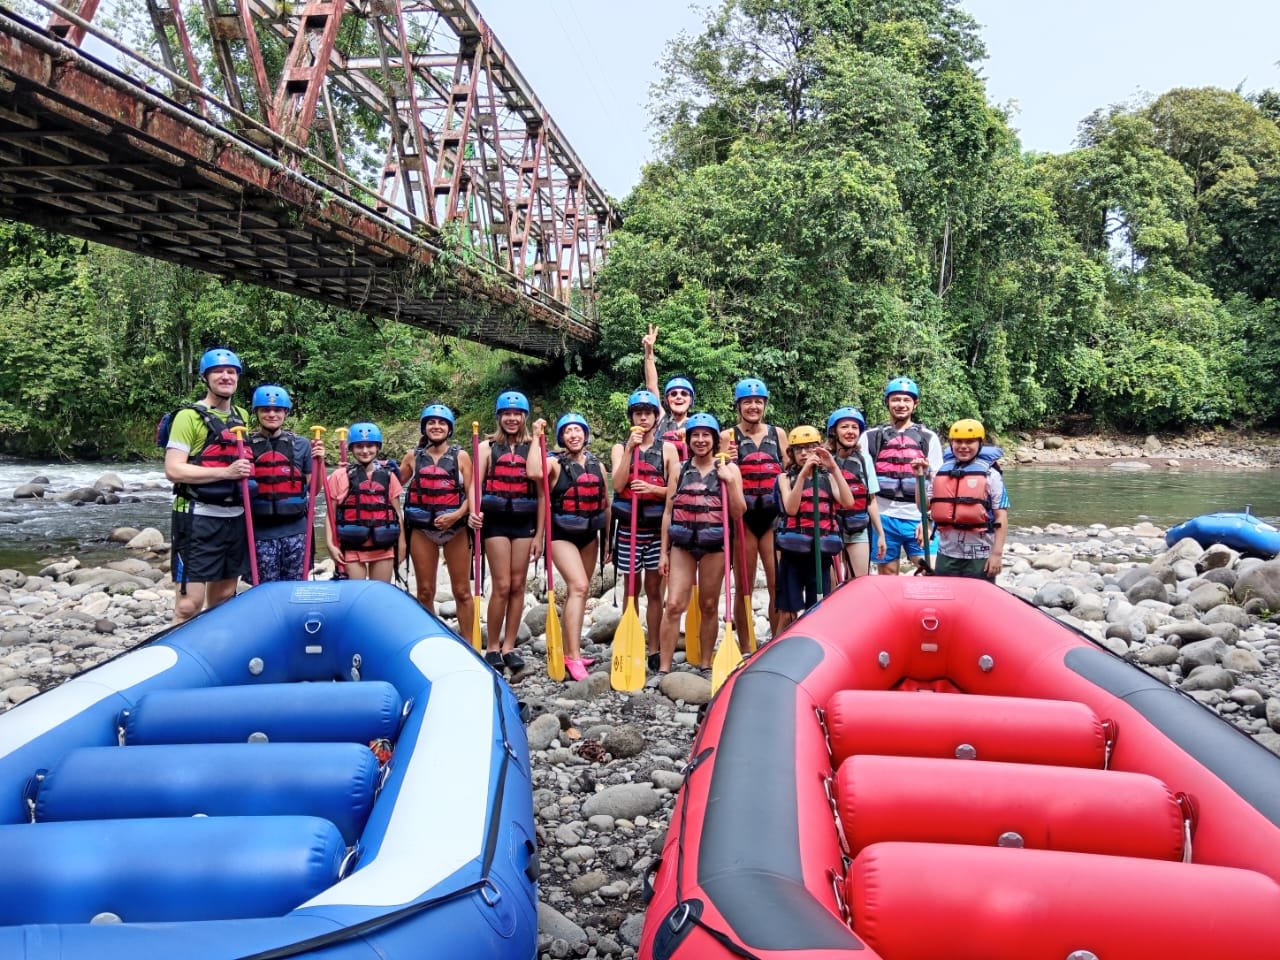 Urlaub mit Jugendlichen - Urlaub mit pubertierenden Kindern - Reiseziele für Jugendliche - Costa Rica Rafting